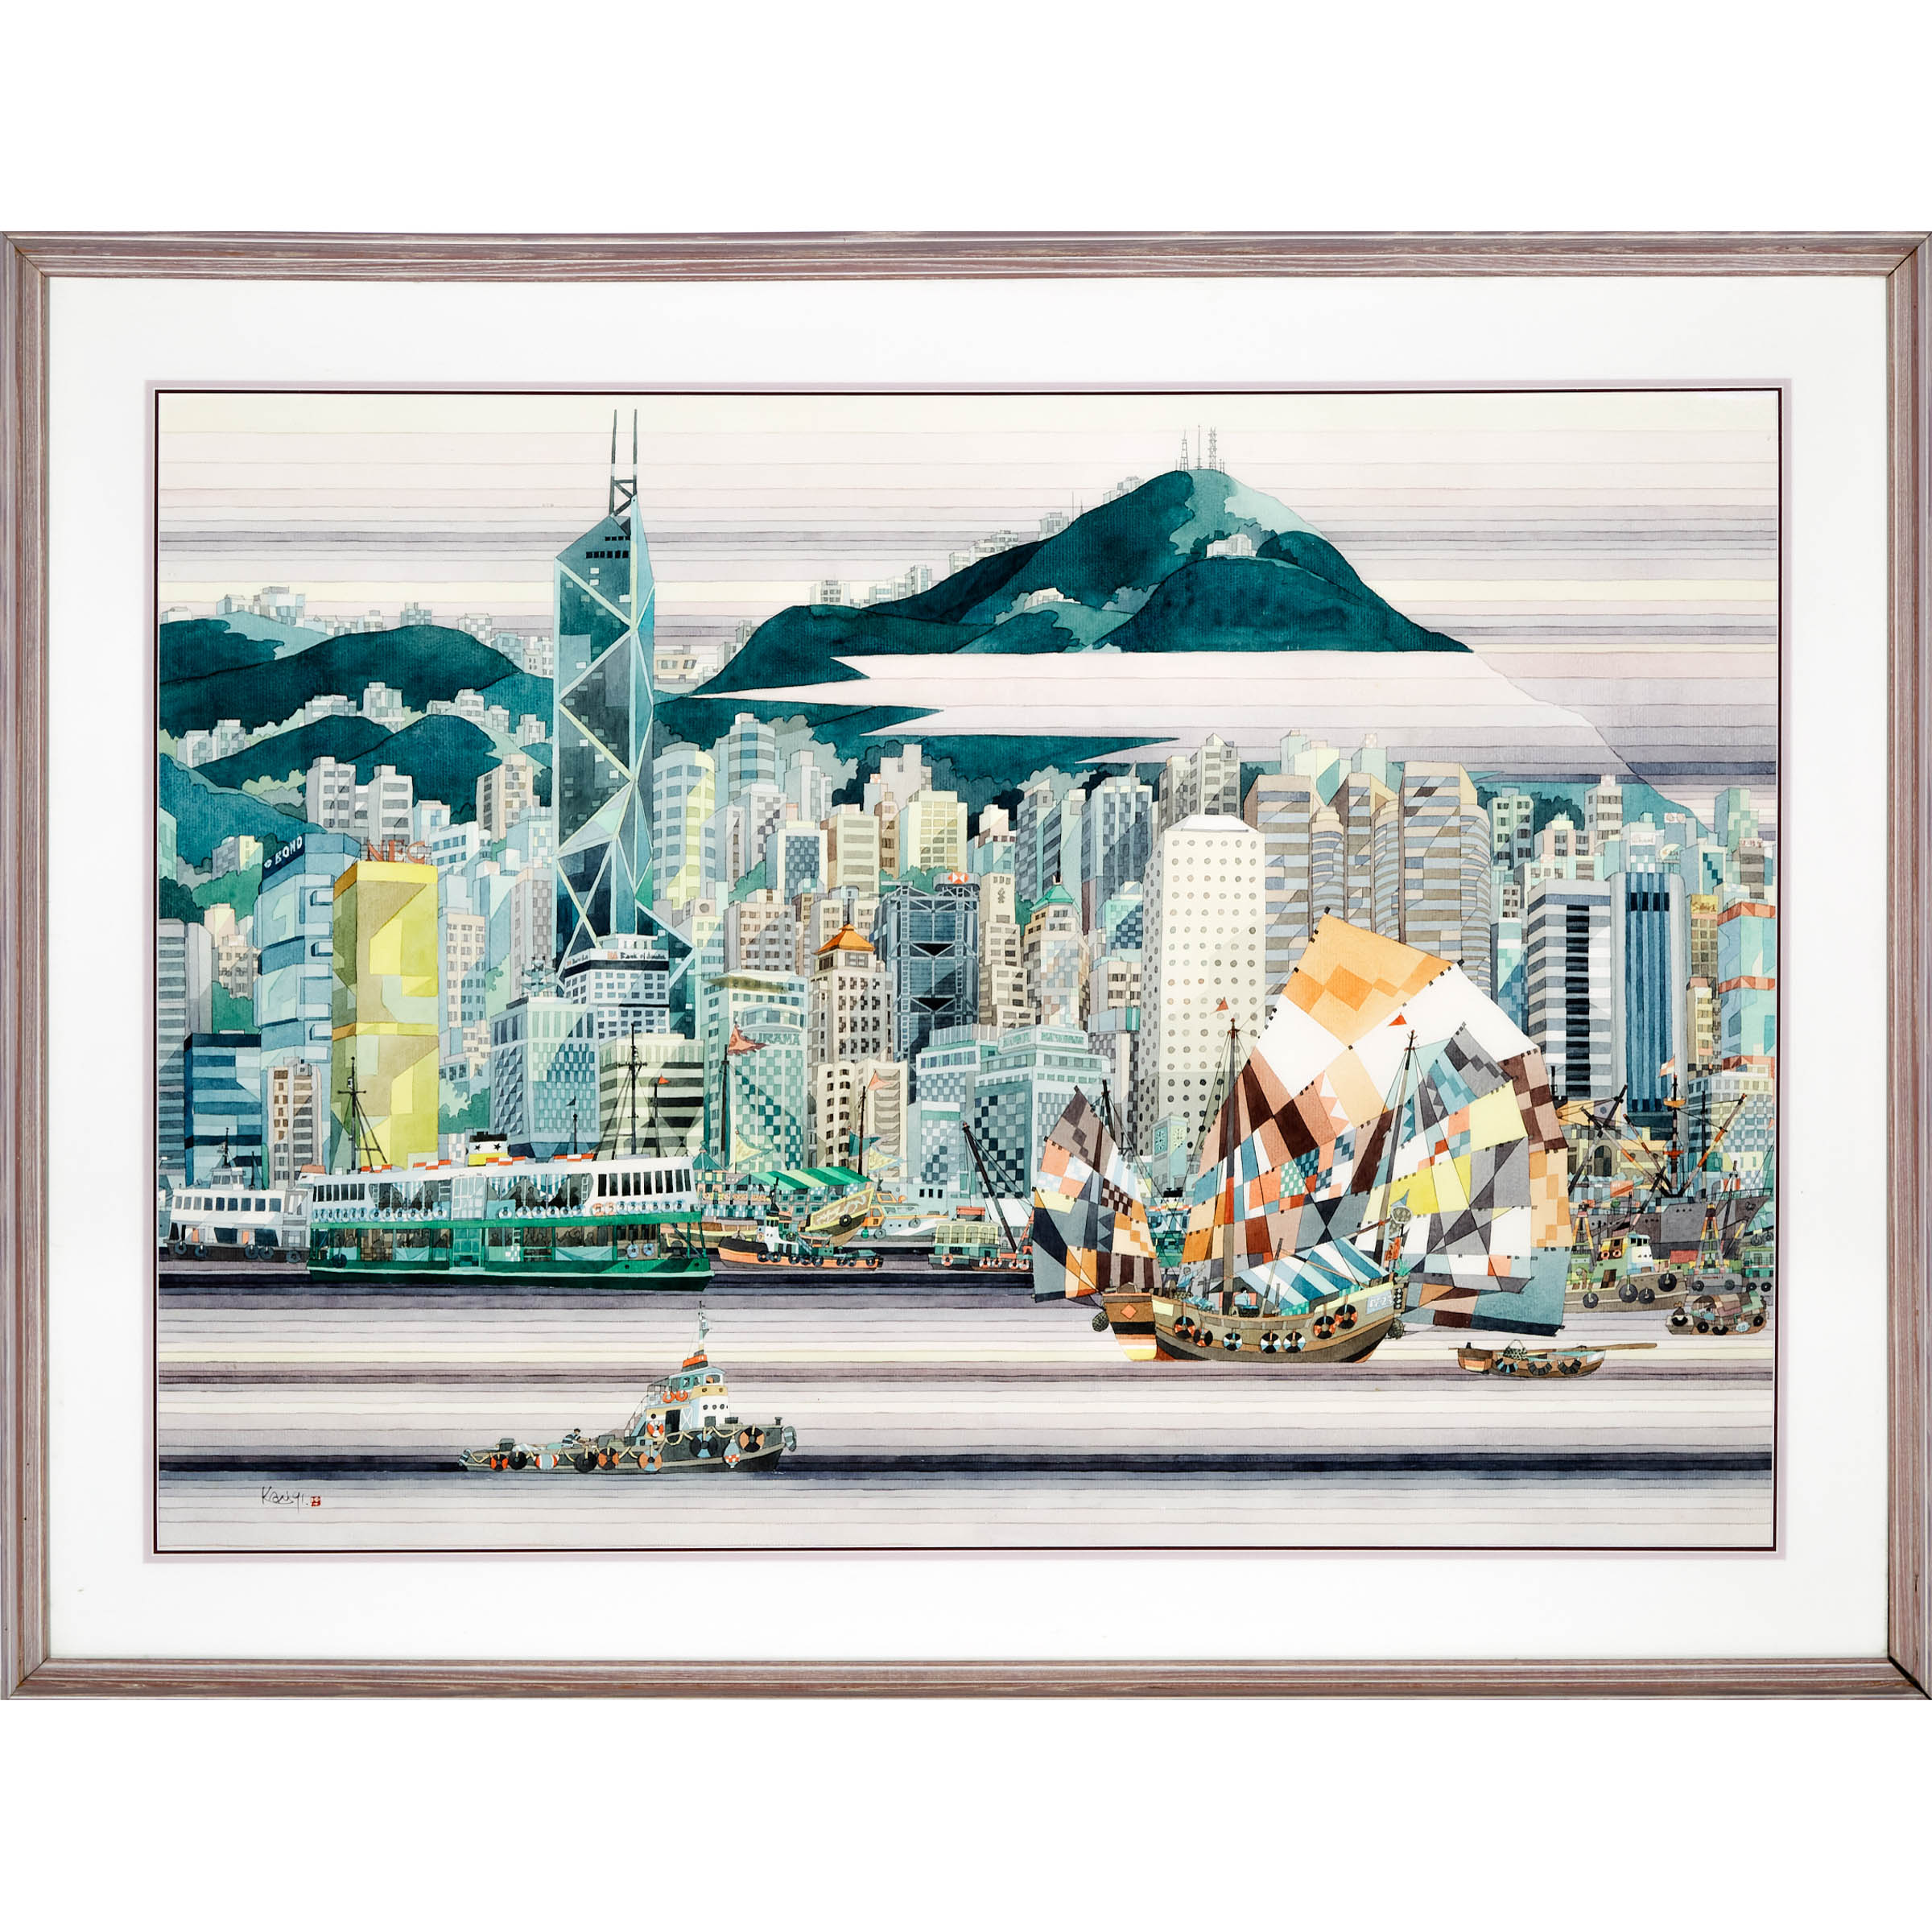 Chan Kau On (1946-), Hong Kong Skyline, 1991